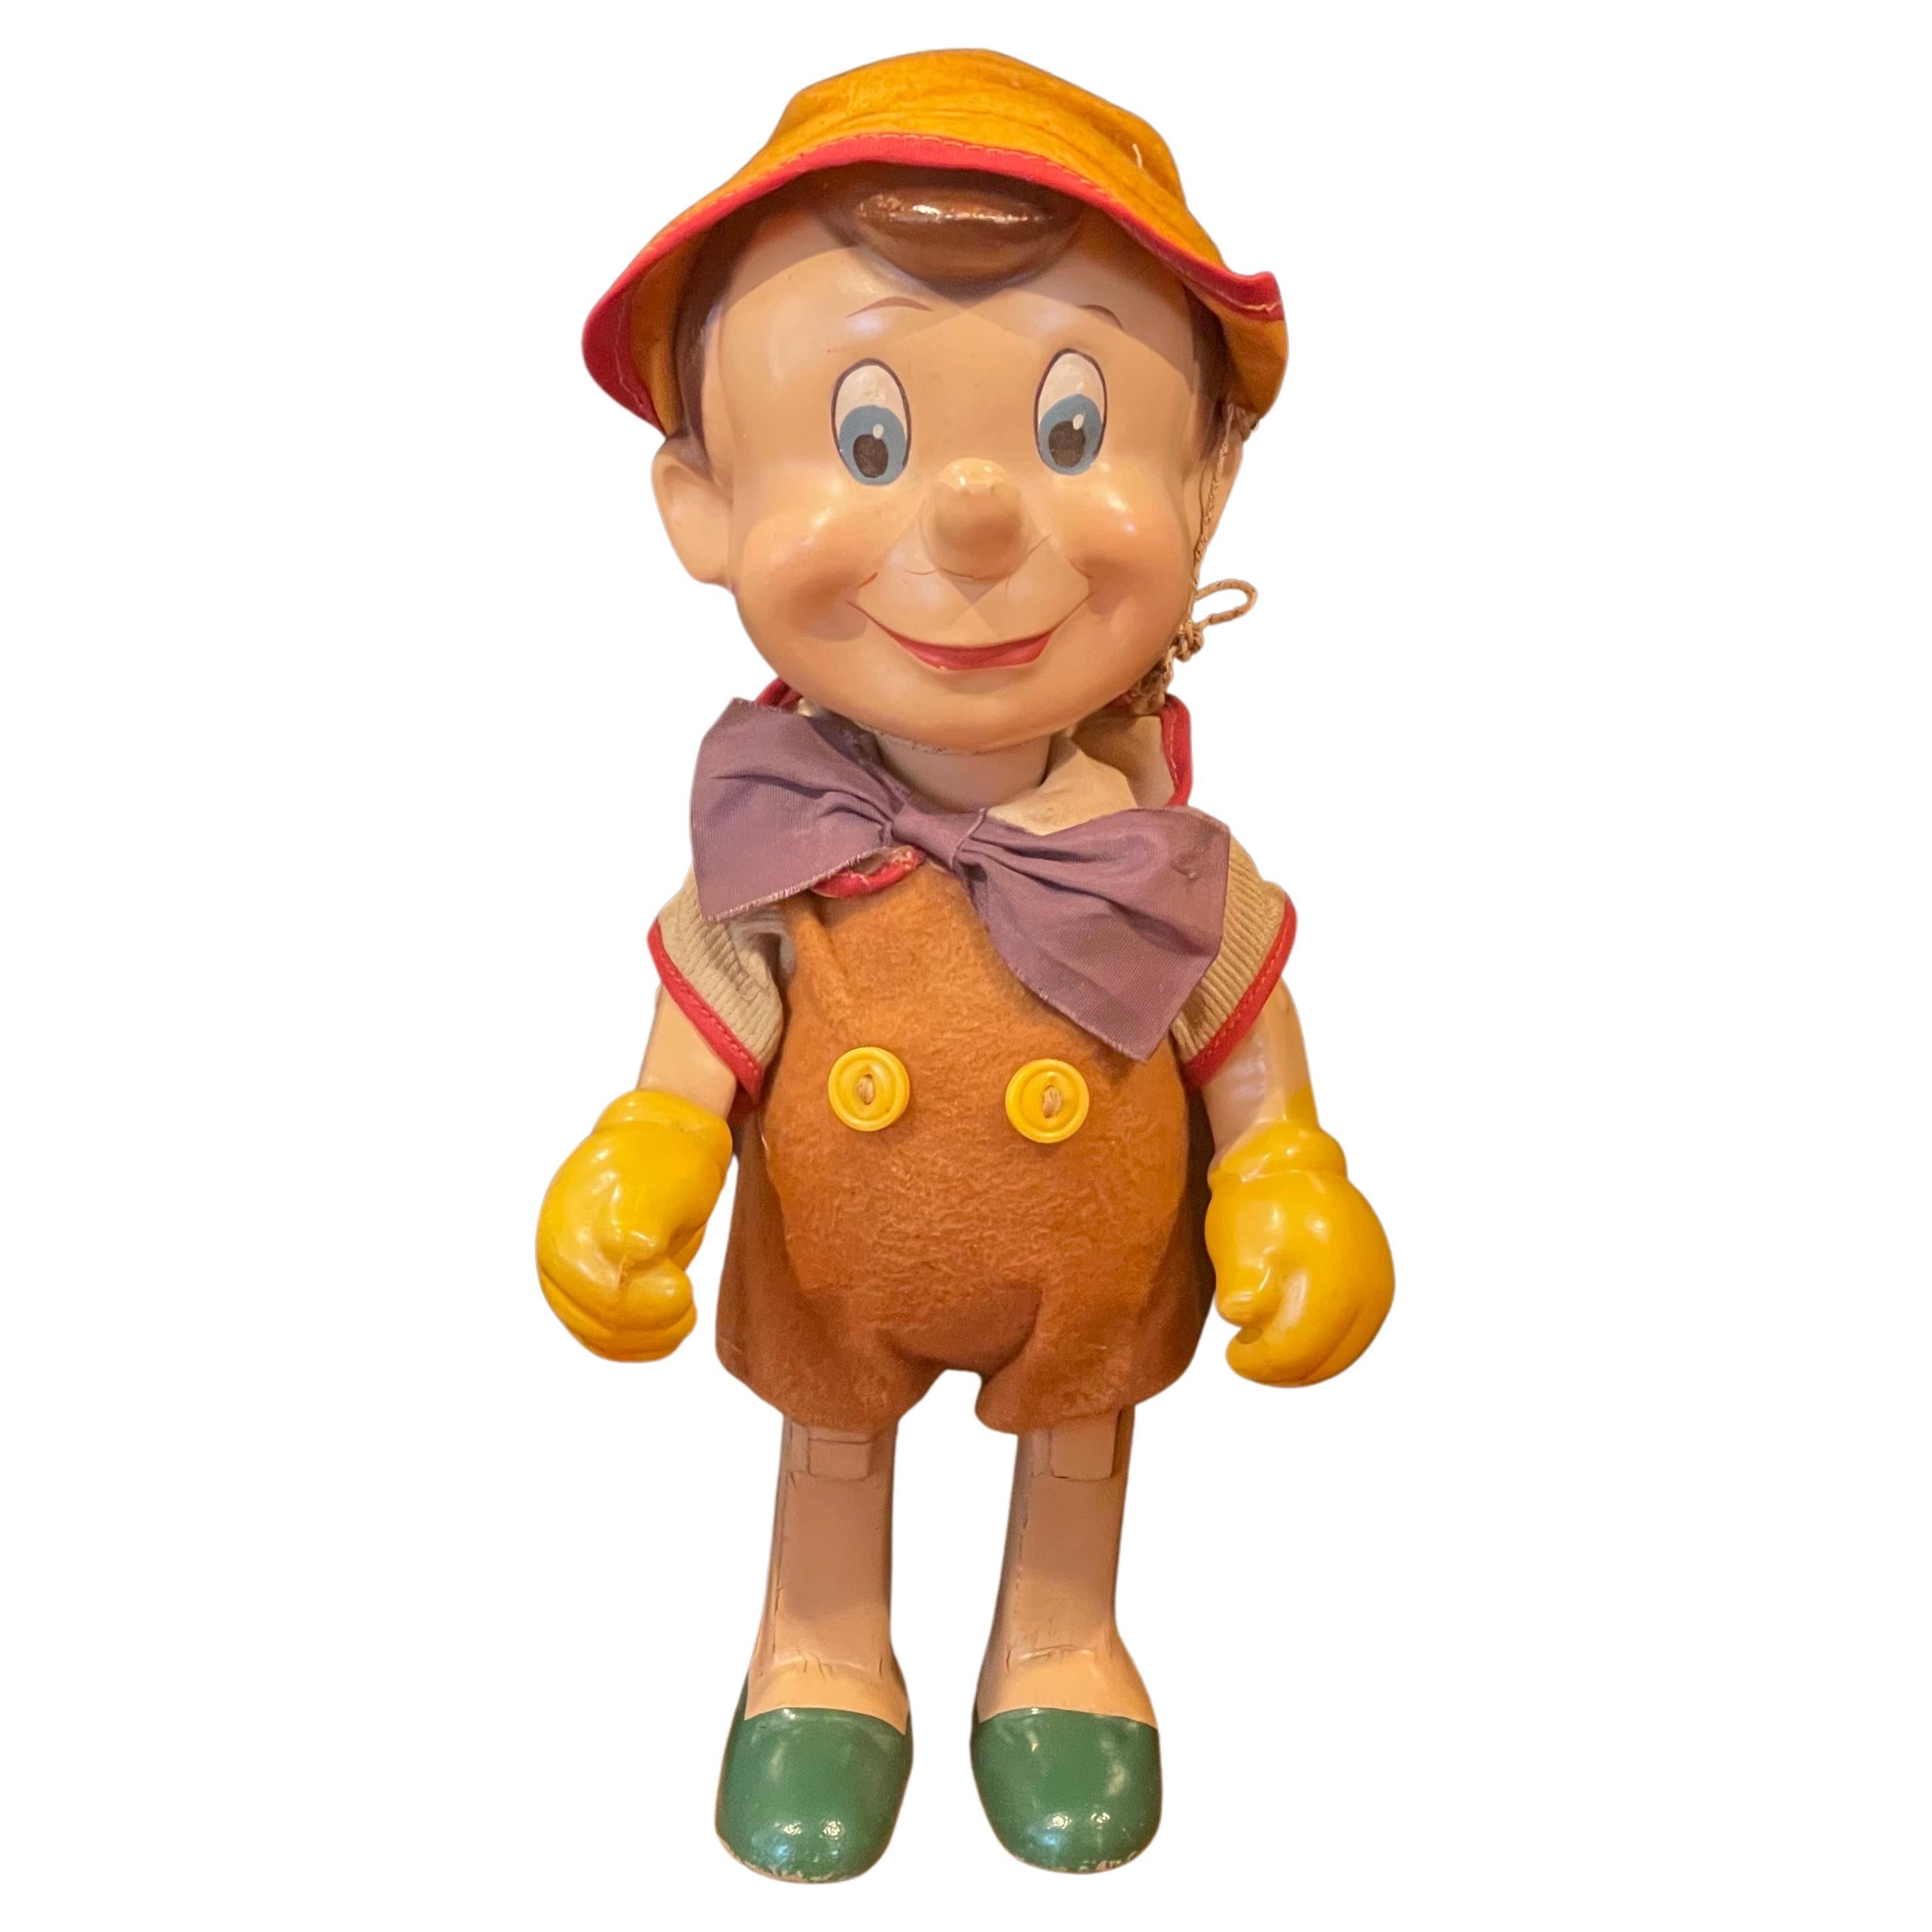 Eine alte Pinocchio-Puppe der Knickerbocker Toy Company, wahrscheinlich aus den 1930er Jahren. Der Rücken der Puppe ist mit der Prägung 